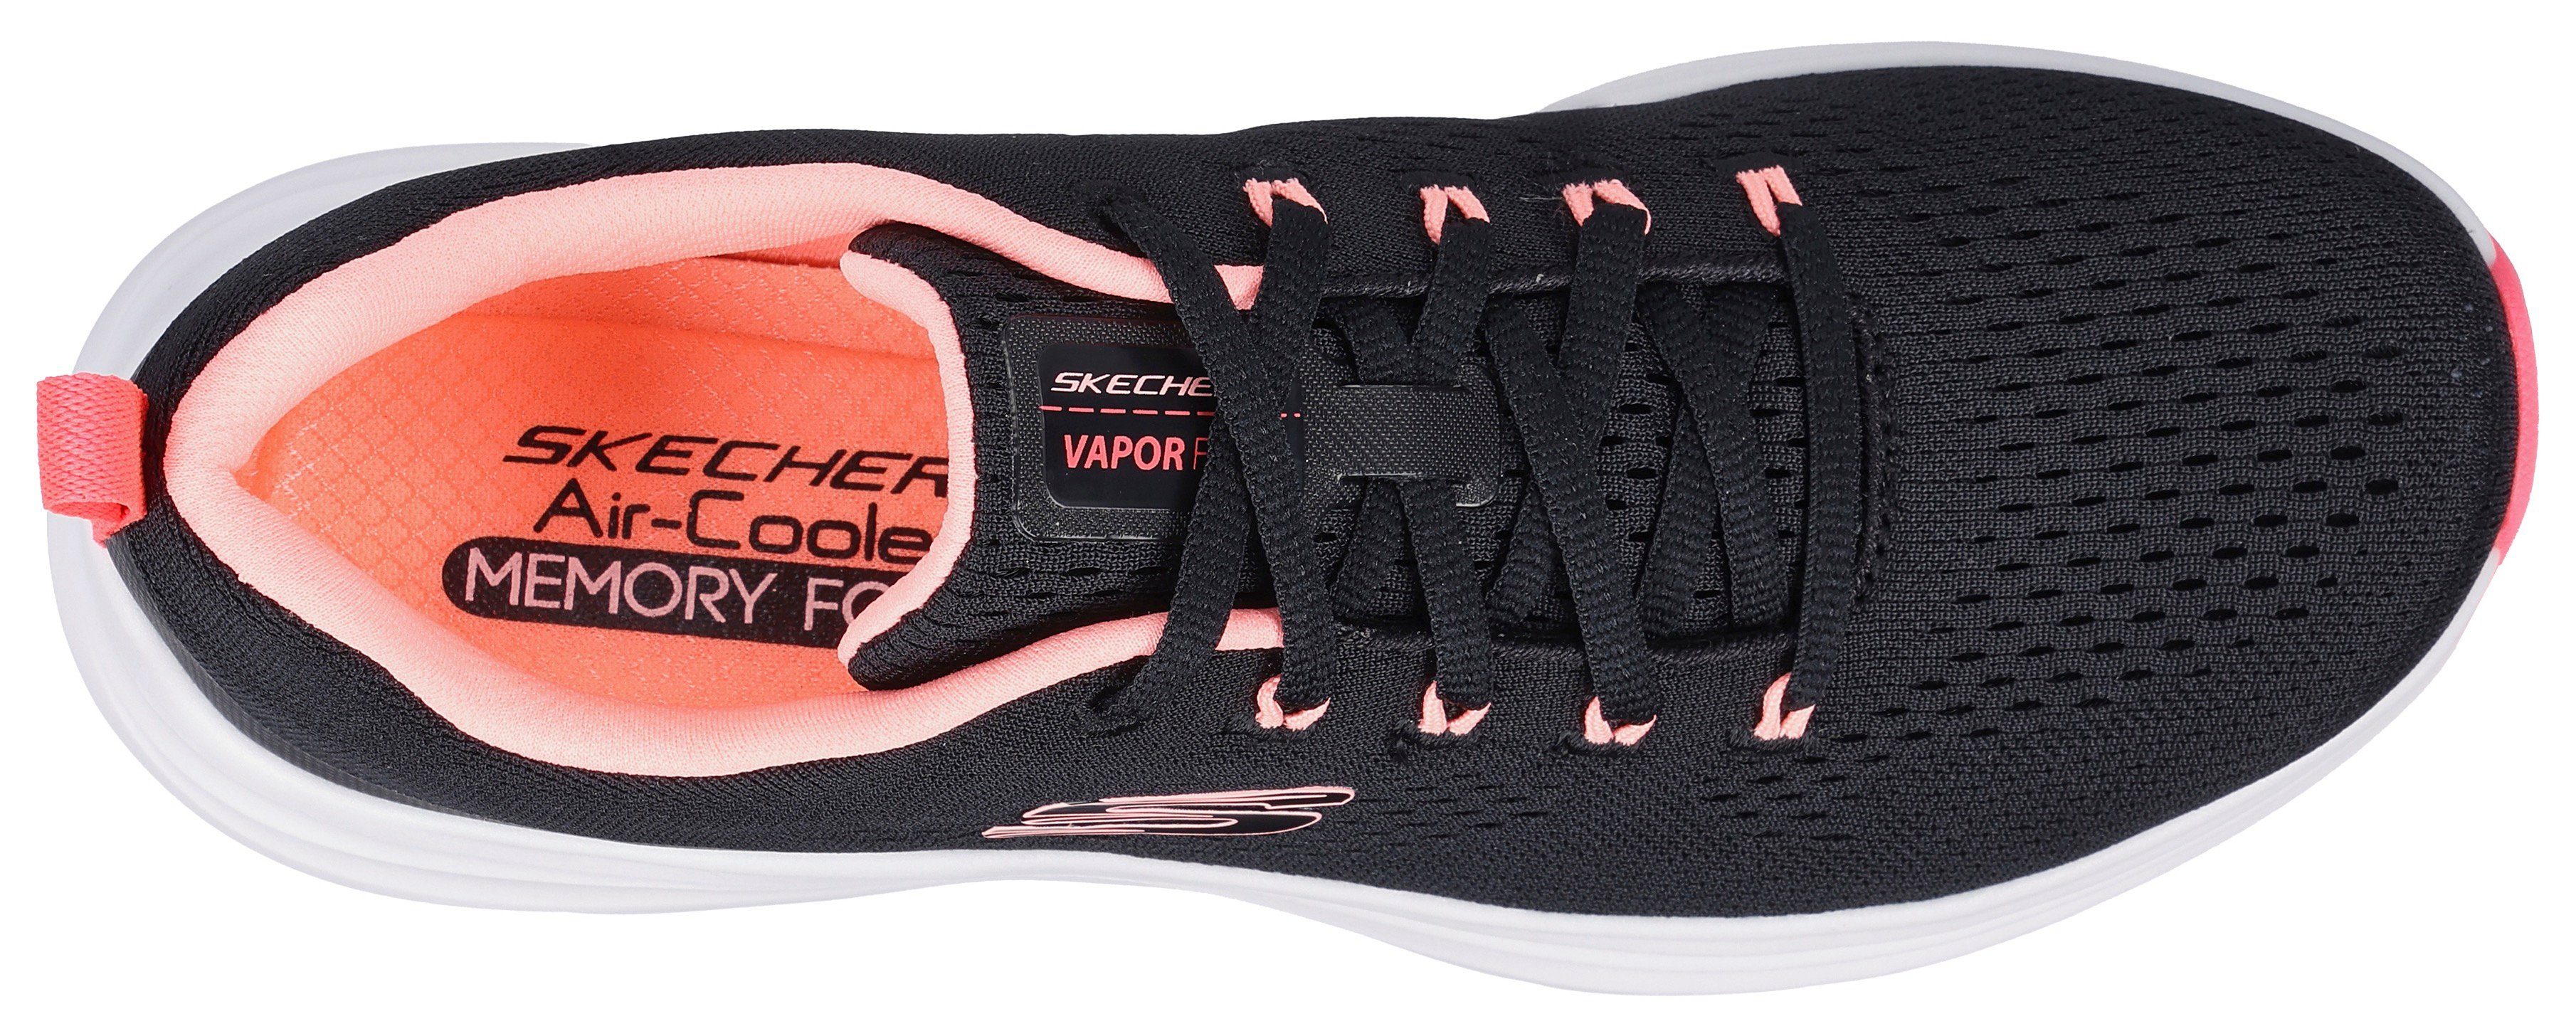 Skechers VAPOR Kontrastdetails mit Sneaker FOAM- dezenten schwarz-kombiniert